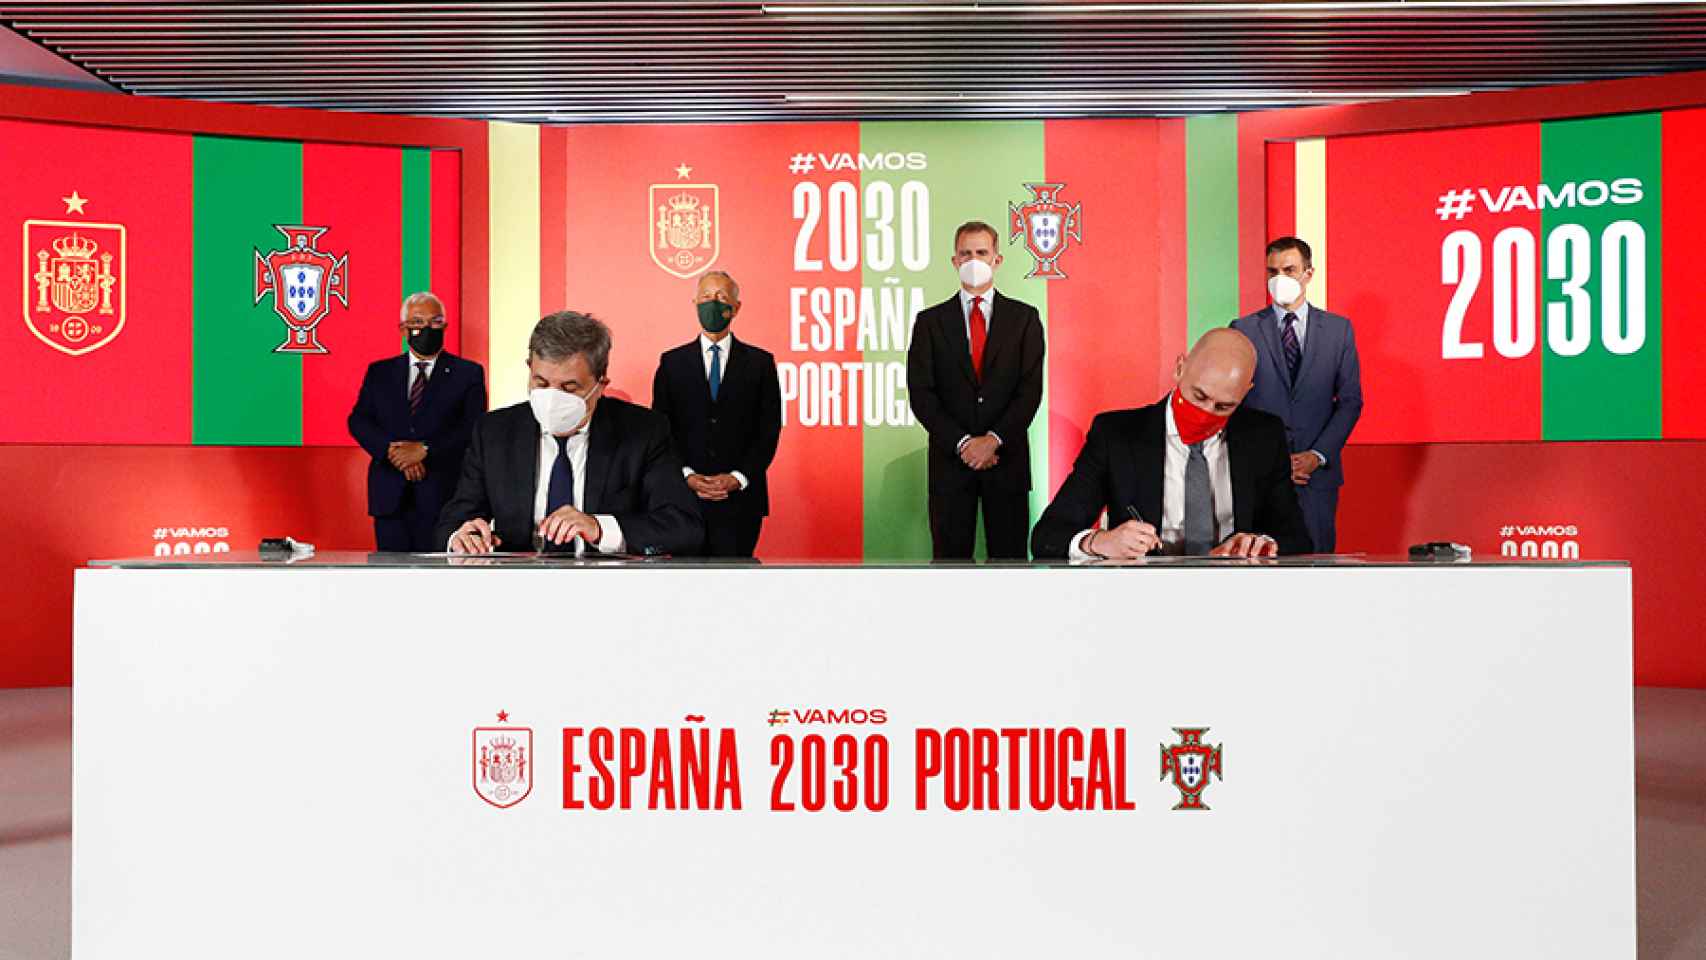 El presidente de la Federación Portuguesa de Fútbol y Luis Rubiales, presidente de la RFEF, firman el acuerdo para la candidatura ibérica del Mundial 2030